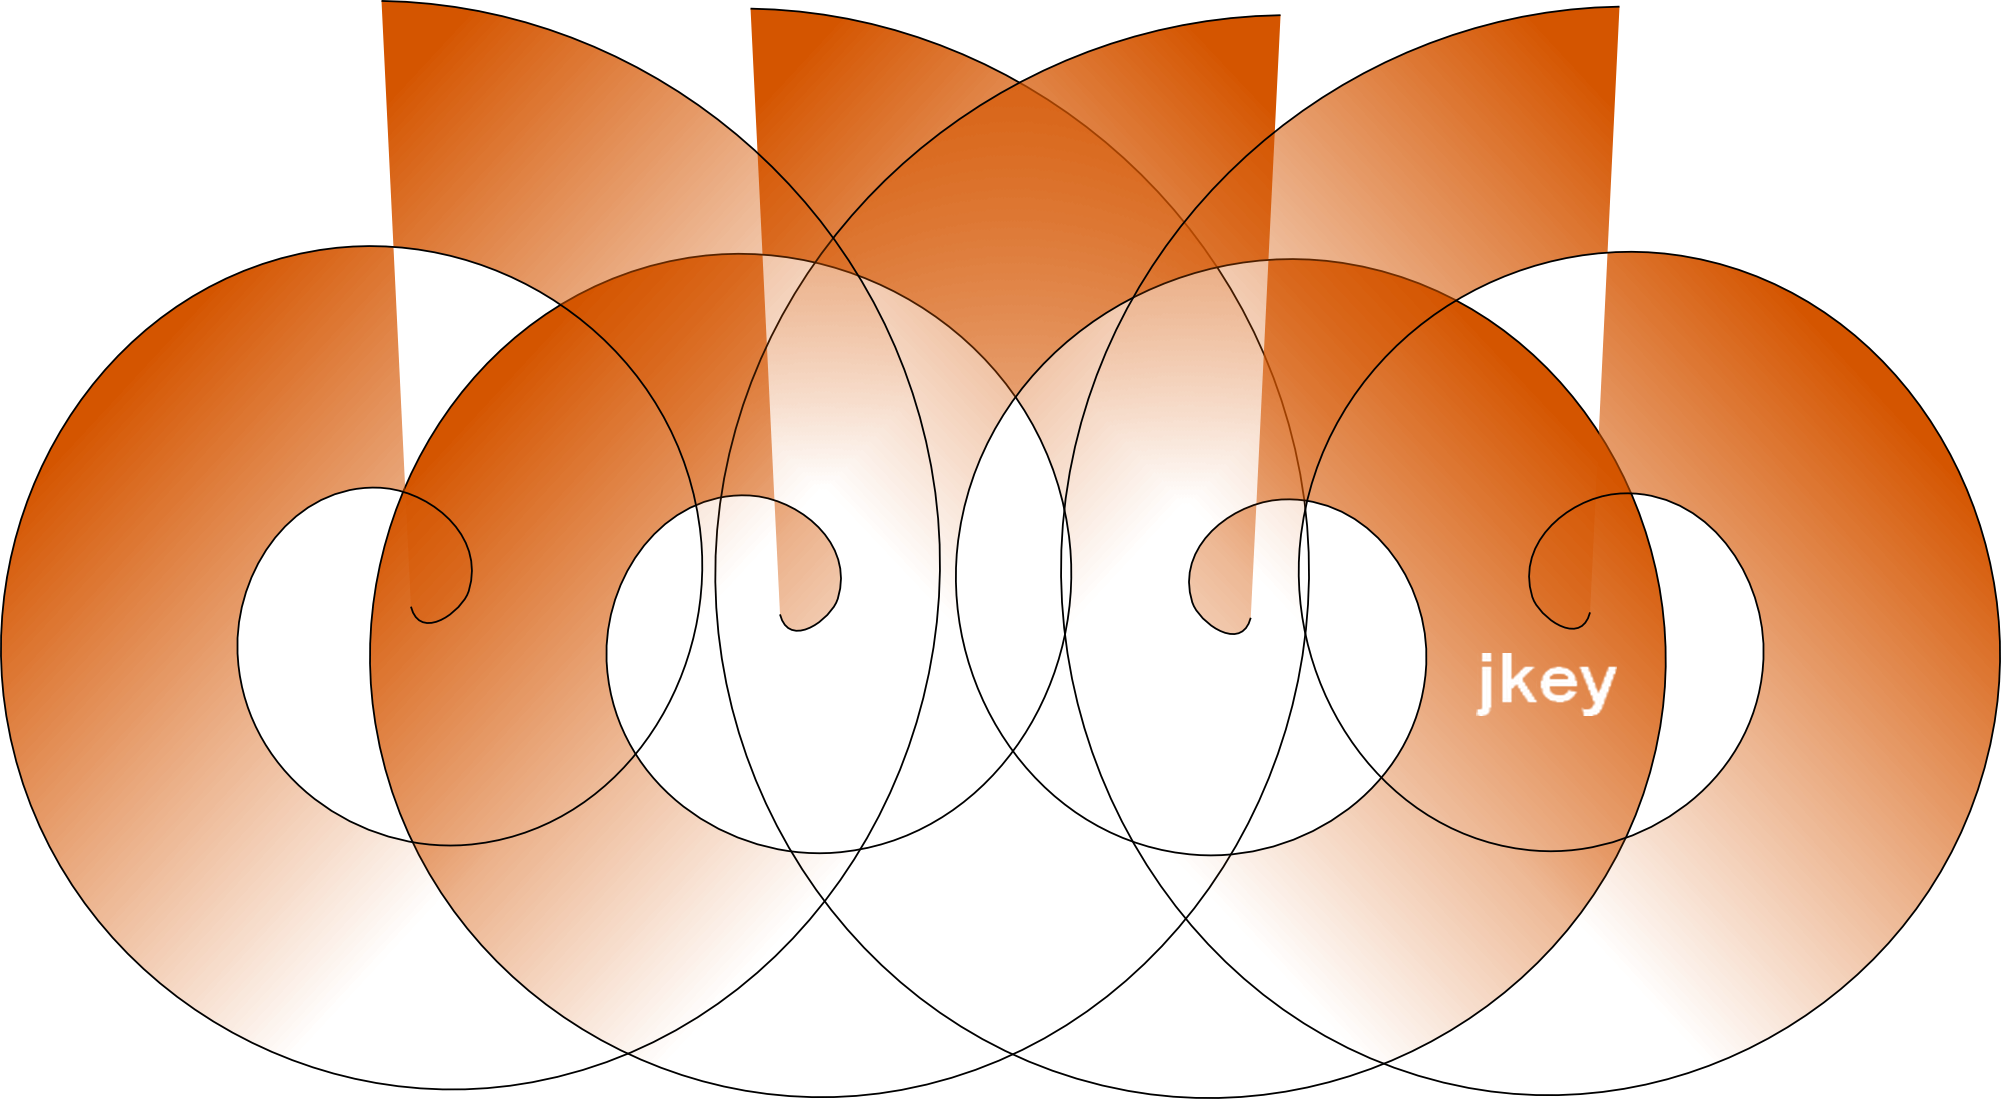 Jkeys by d2 software